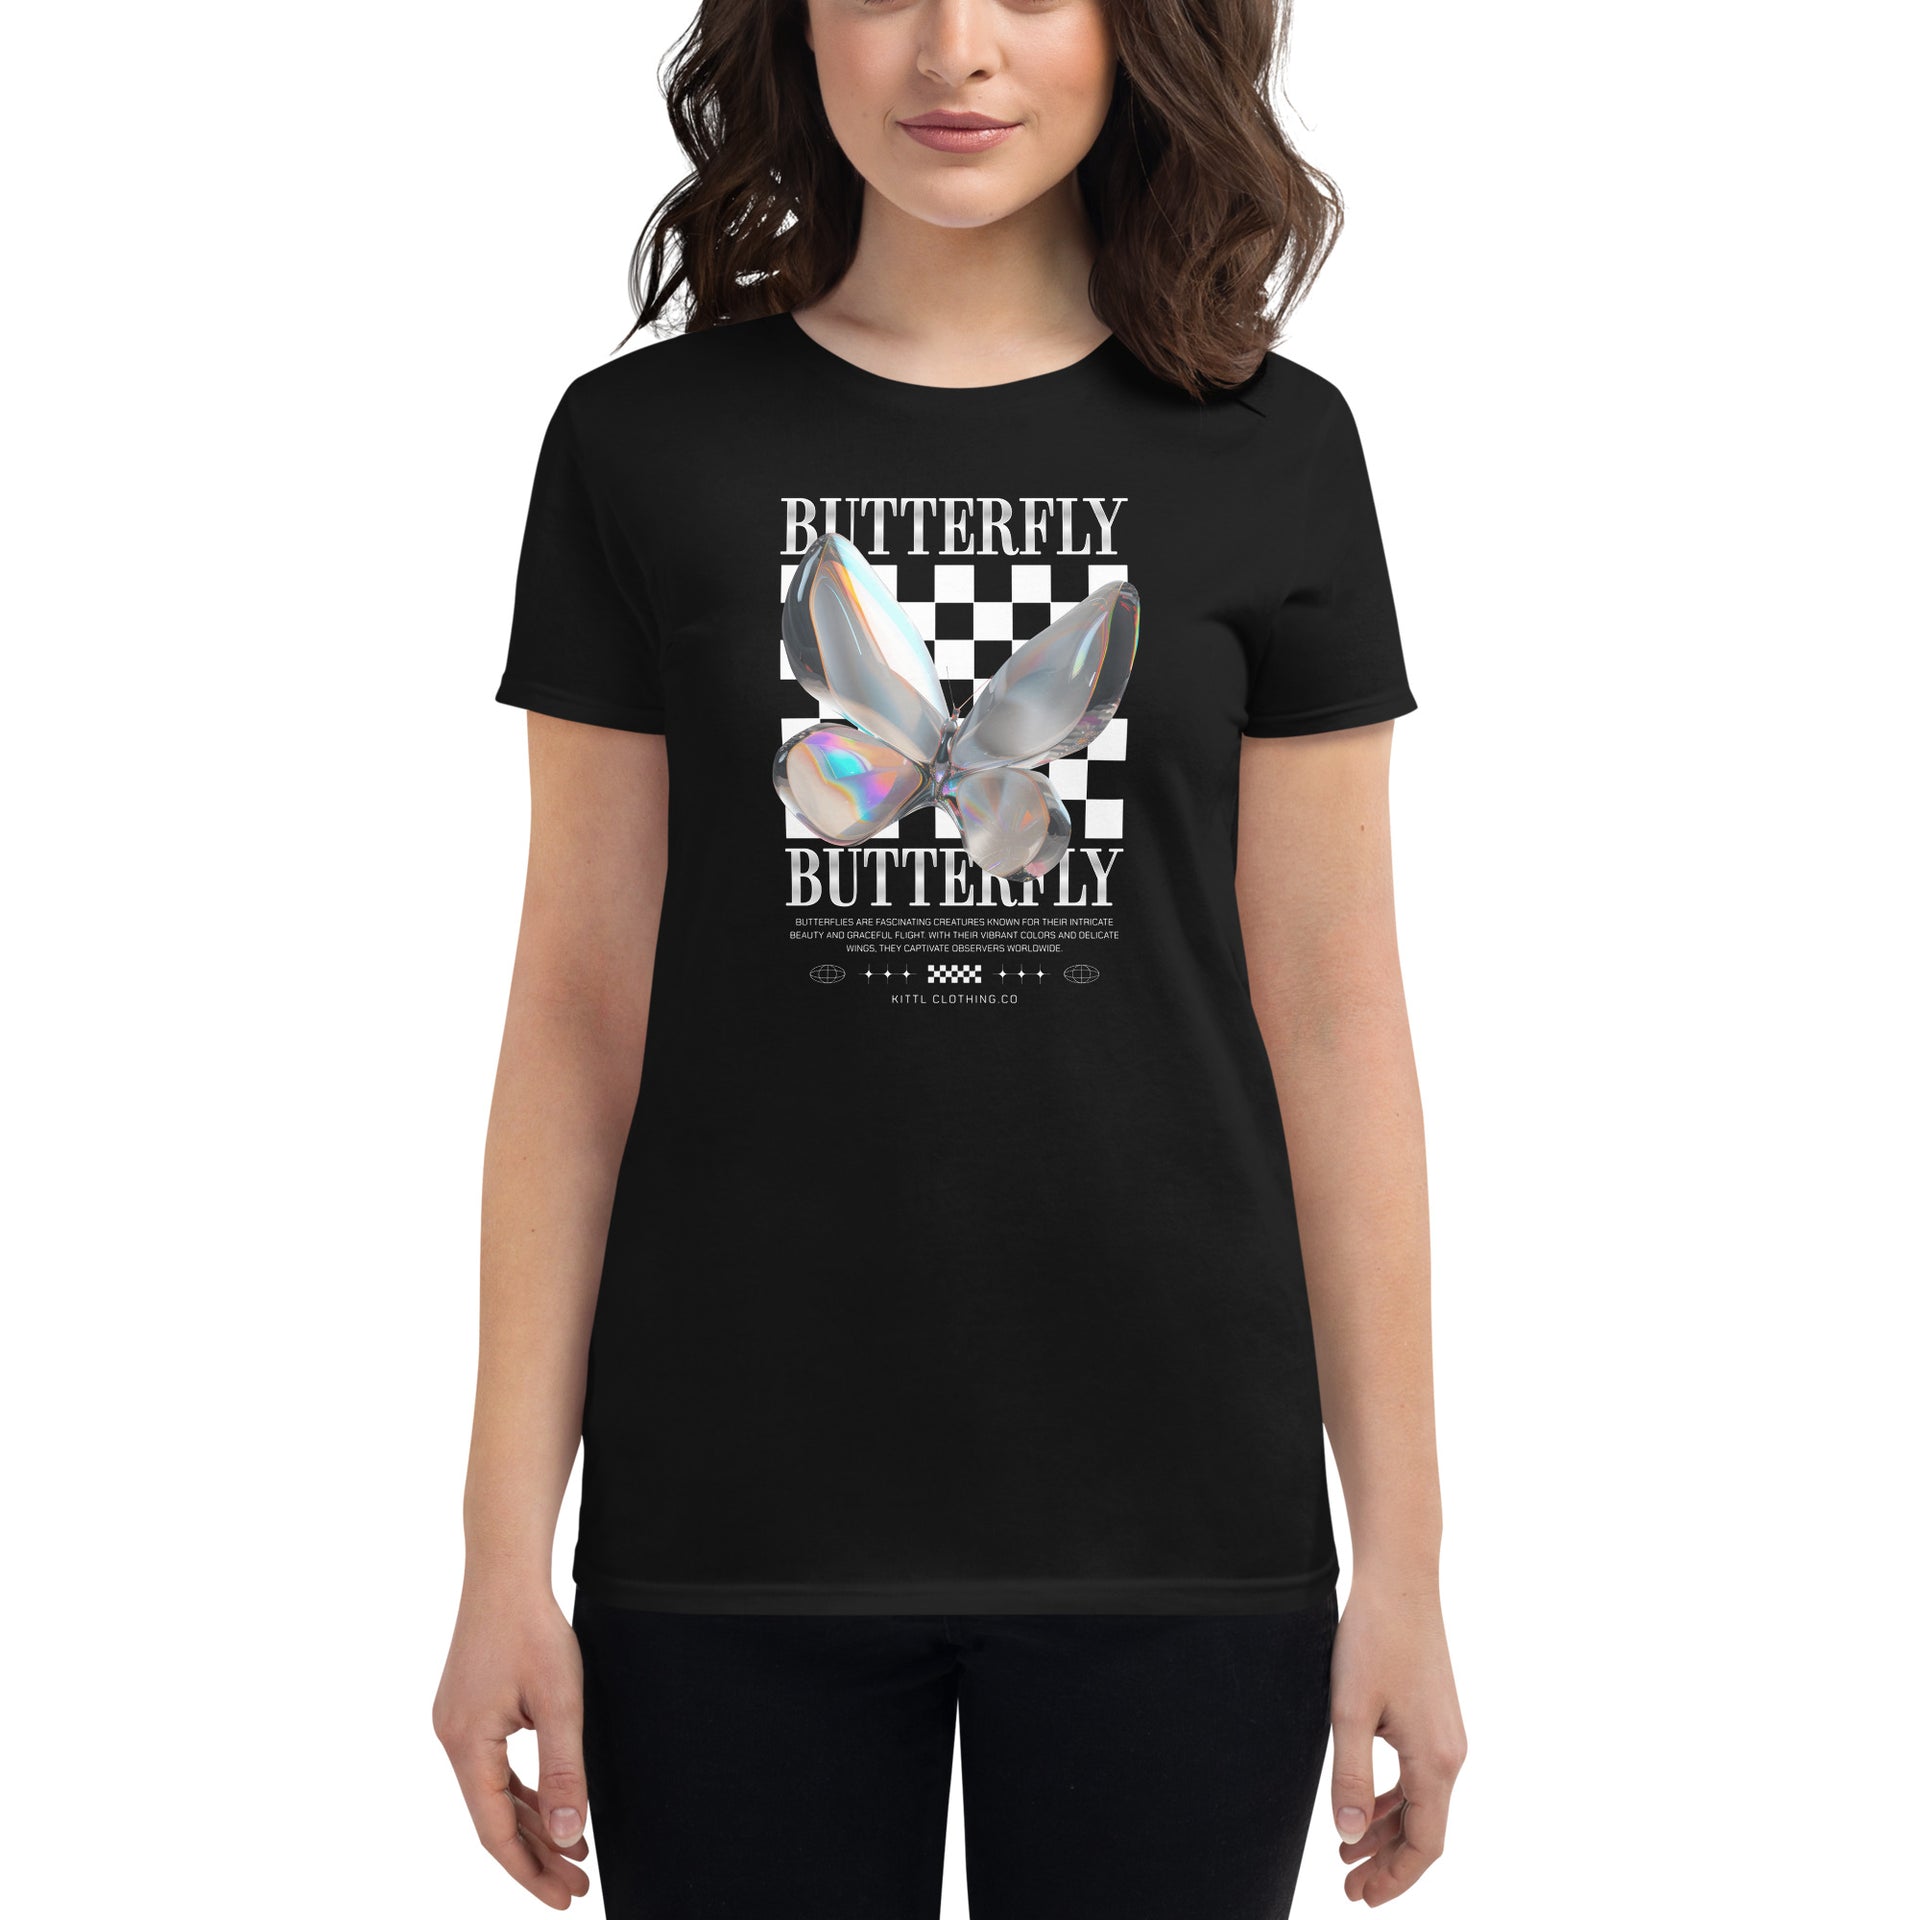 Chrome Butterfly Women's T-Shirt